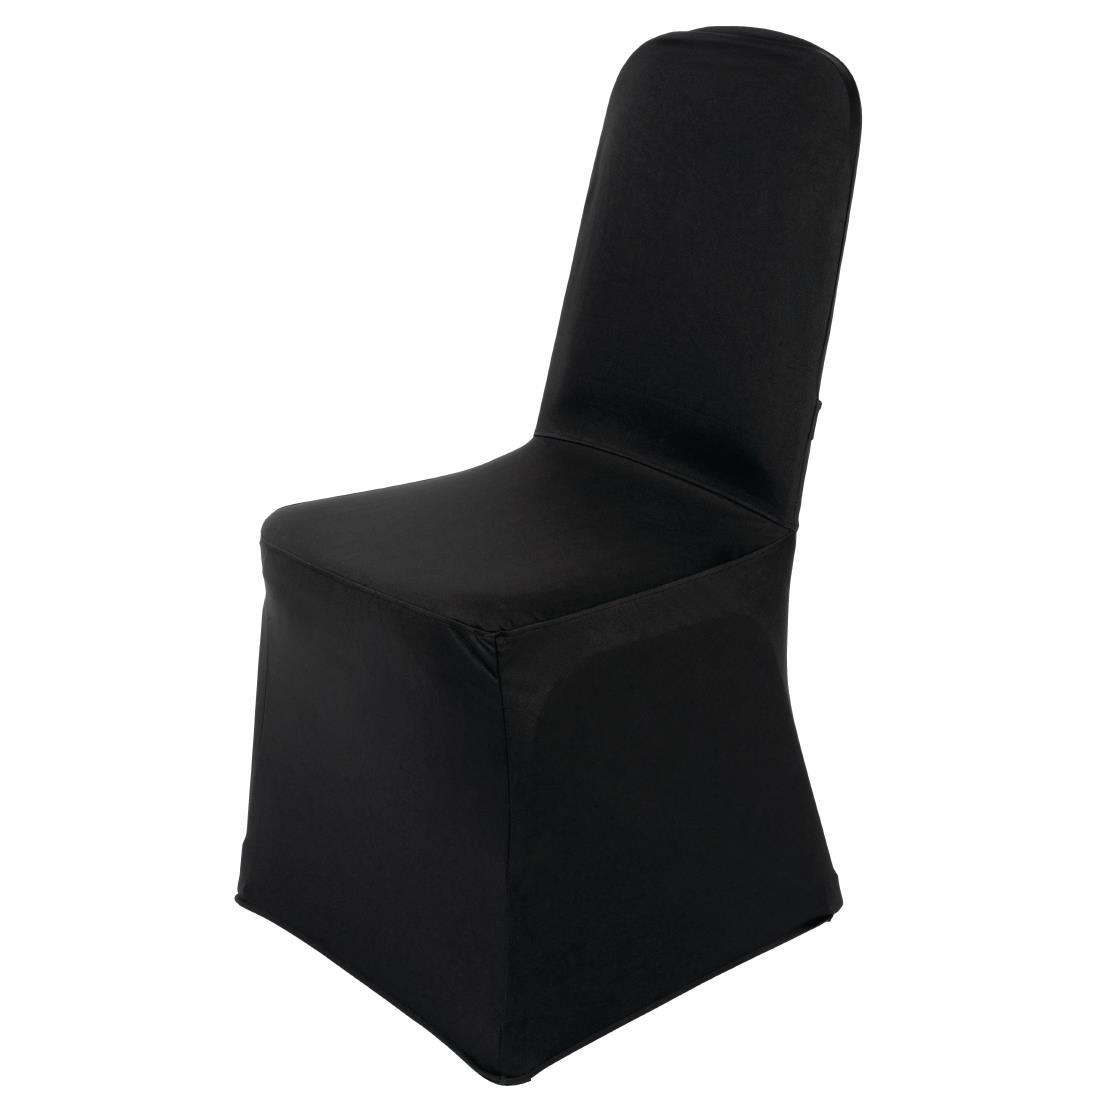 Bolero Banquet Chair Cover Black - DP923  - 2